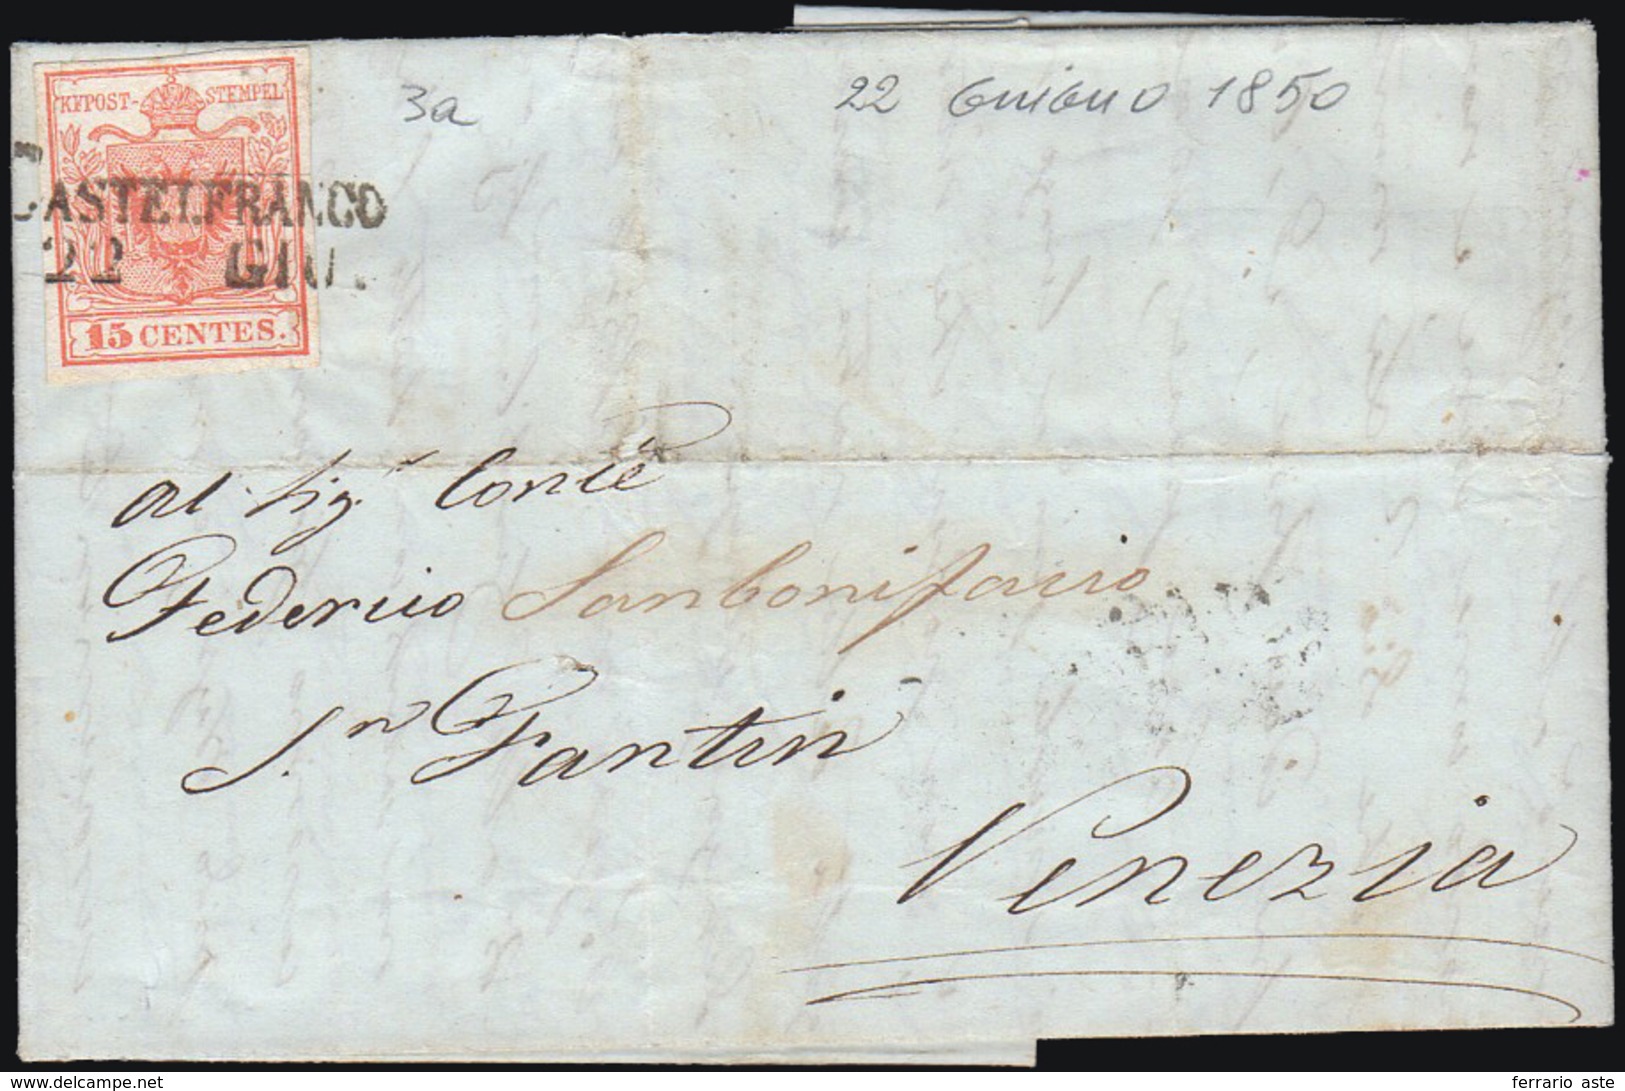 CASTELFRANCO, SD Ig Punti 10 - 15 Cent. (3a), Leggero Plì D'accordeon, Su Lettera Del 22/6/1850, Pri... - Lombardo-Venetien